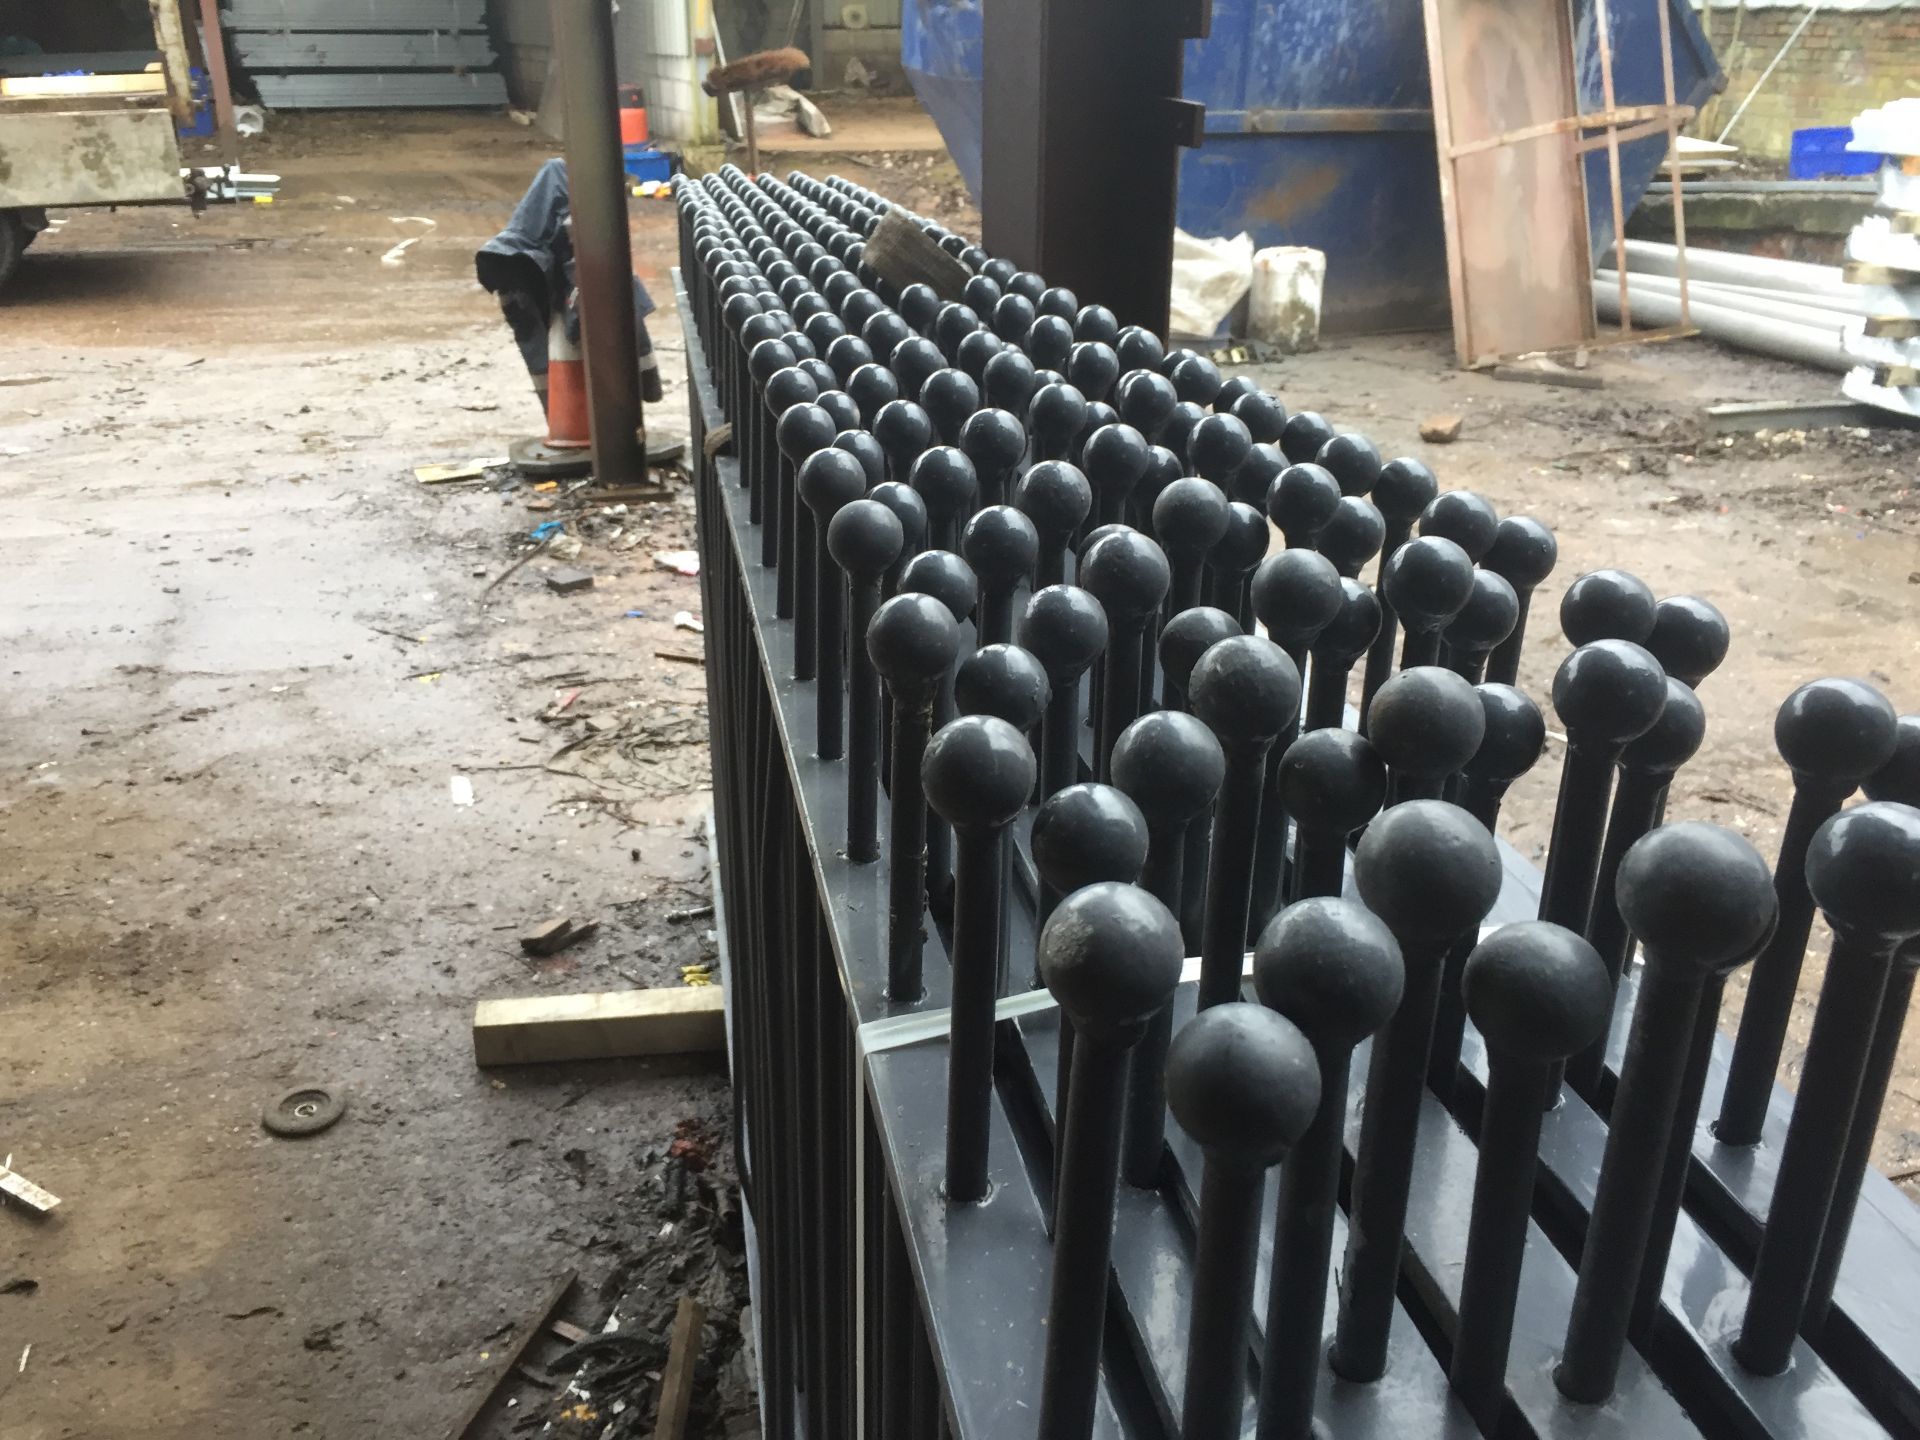 45m x 1200mm high Ball Top Fence Panels (New) - Bild 2 aus 2